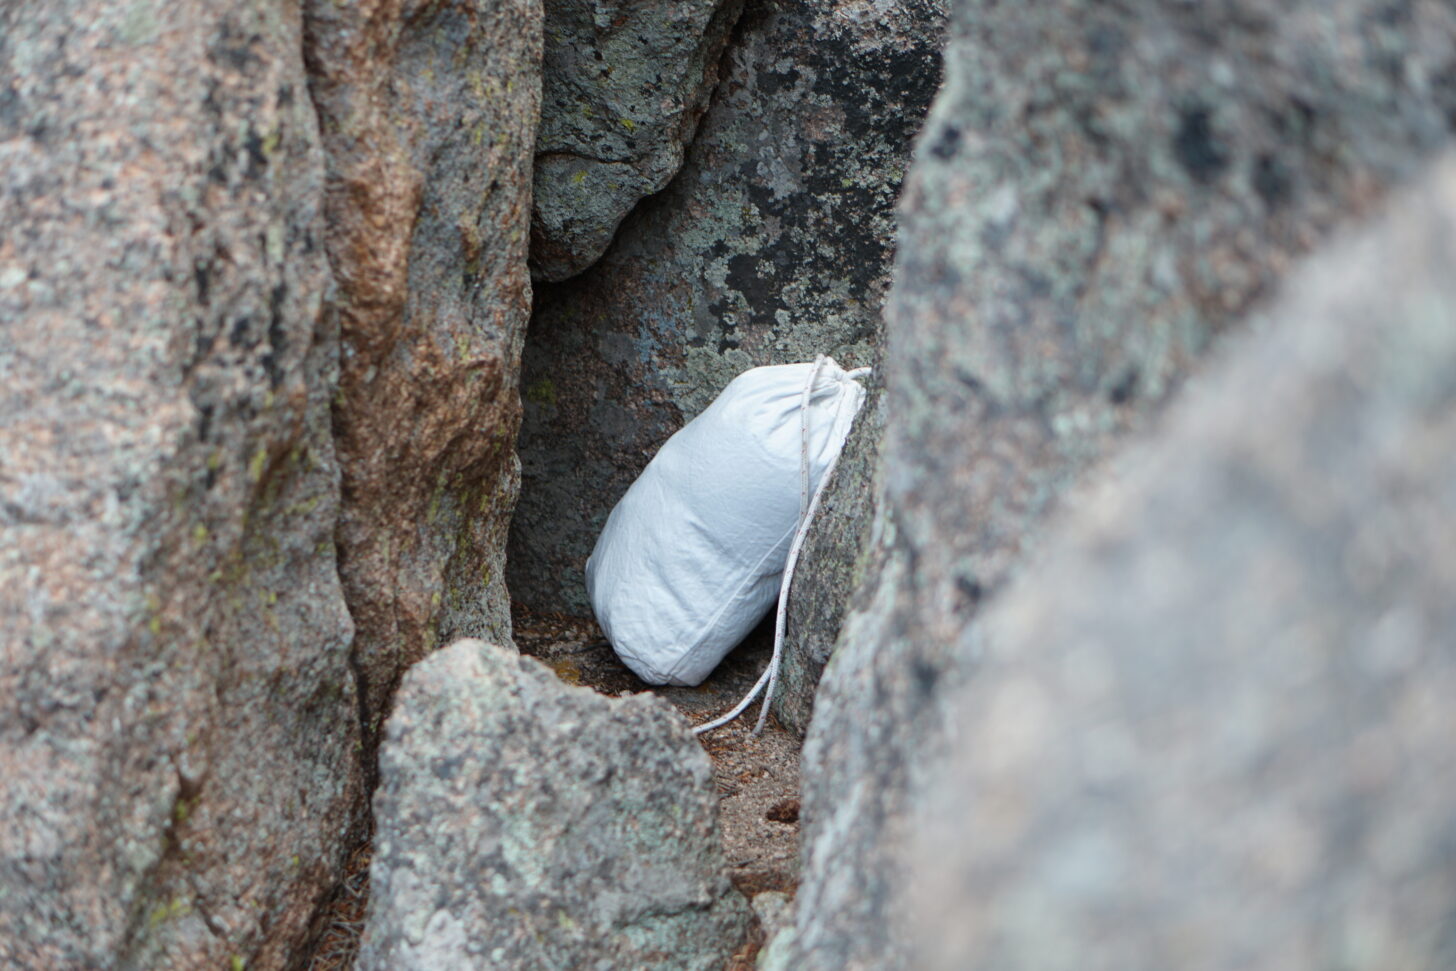 ursack hidden in a rock crevice